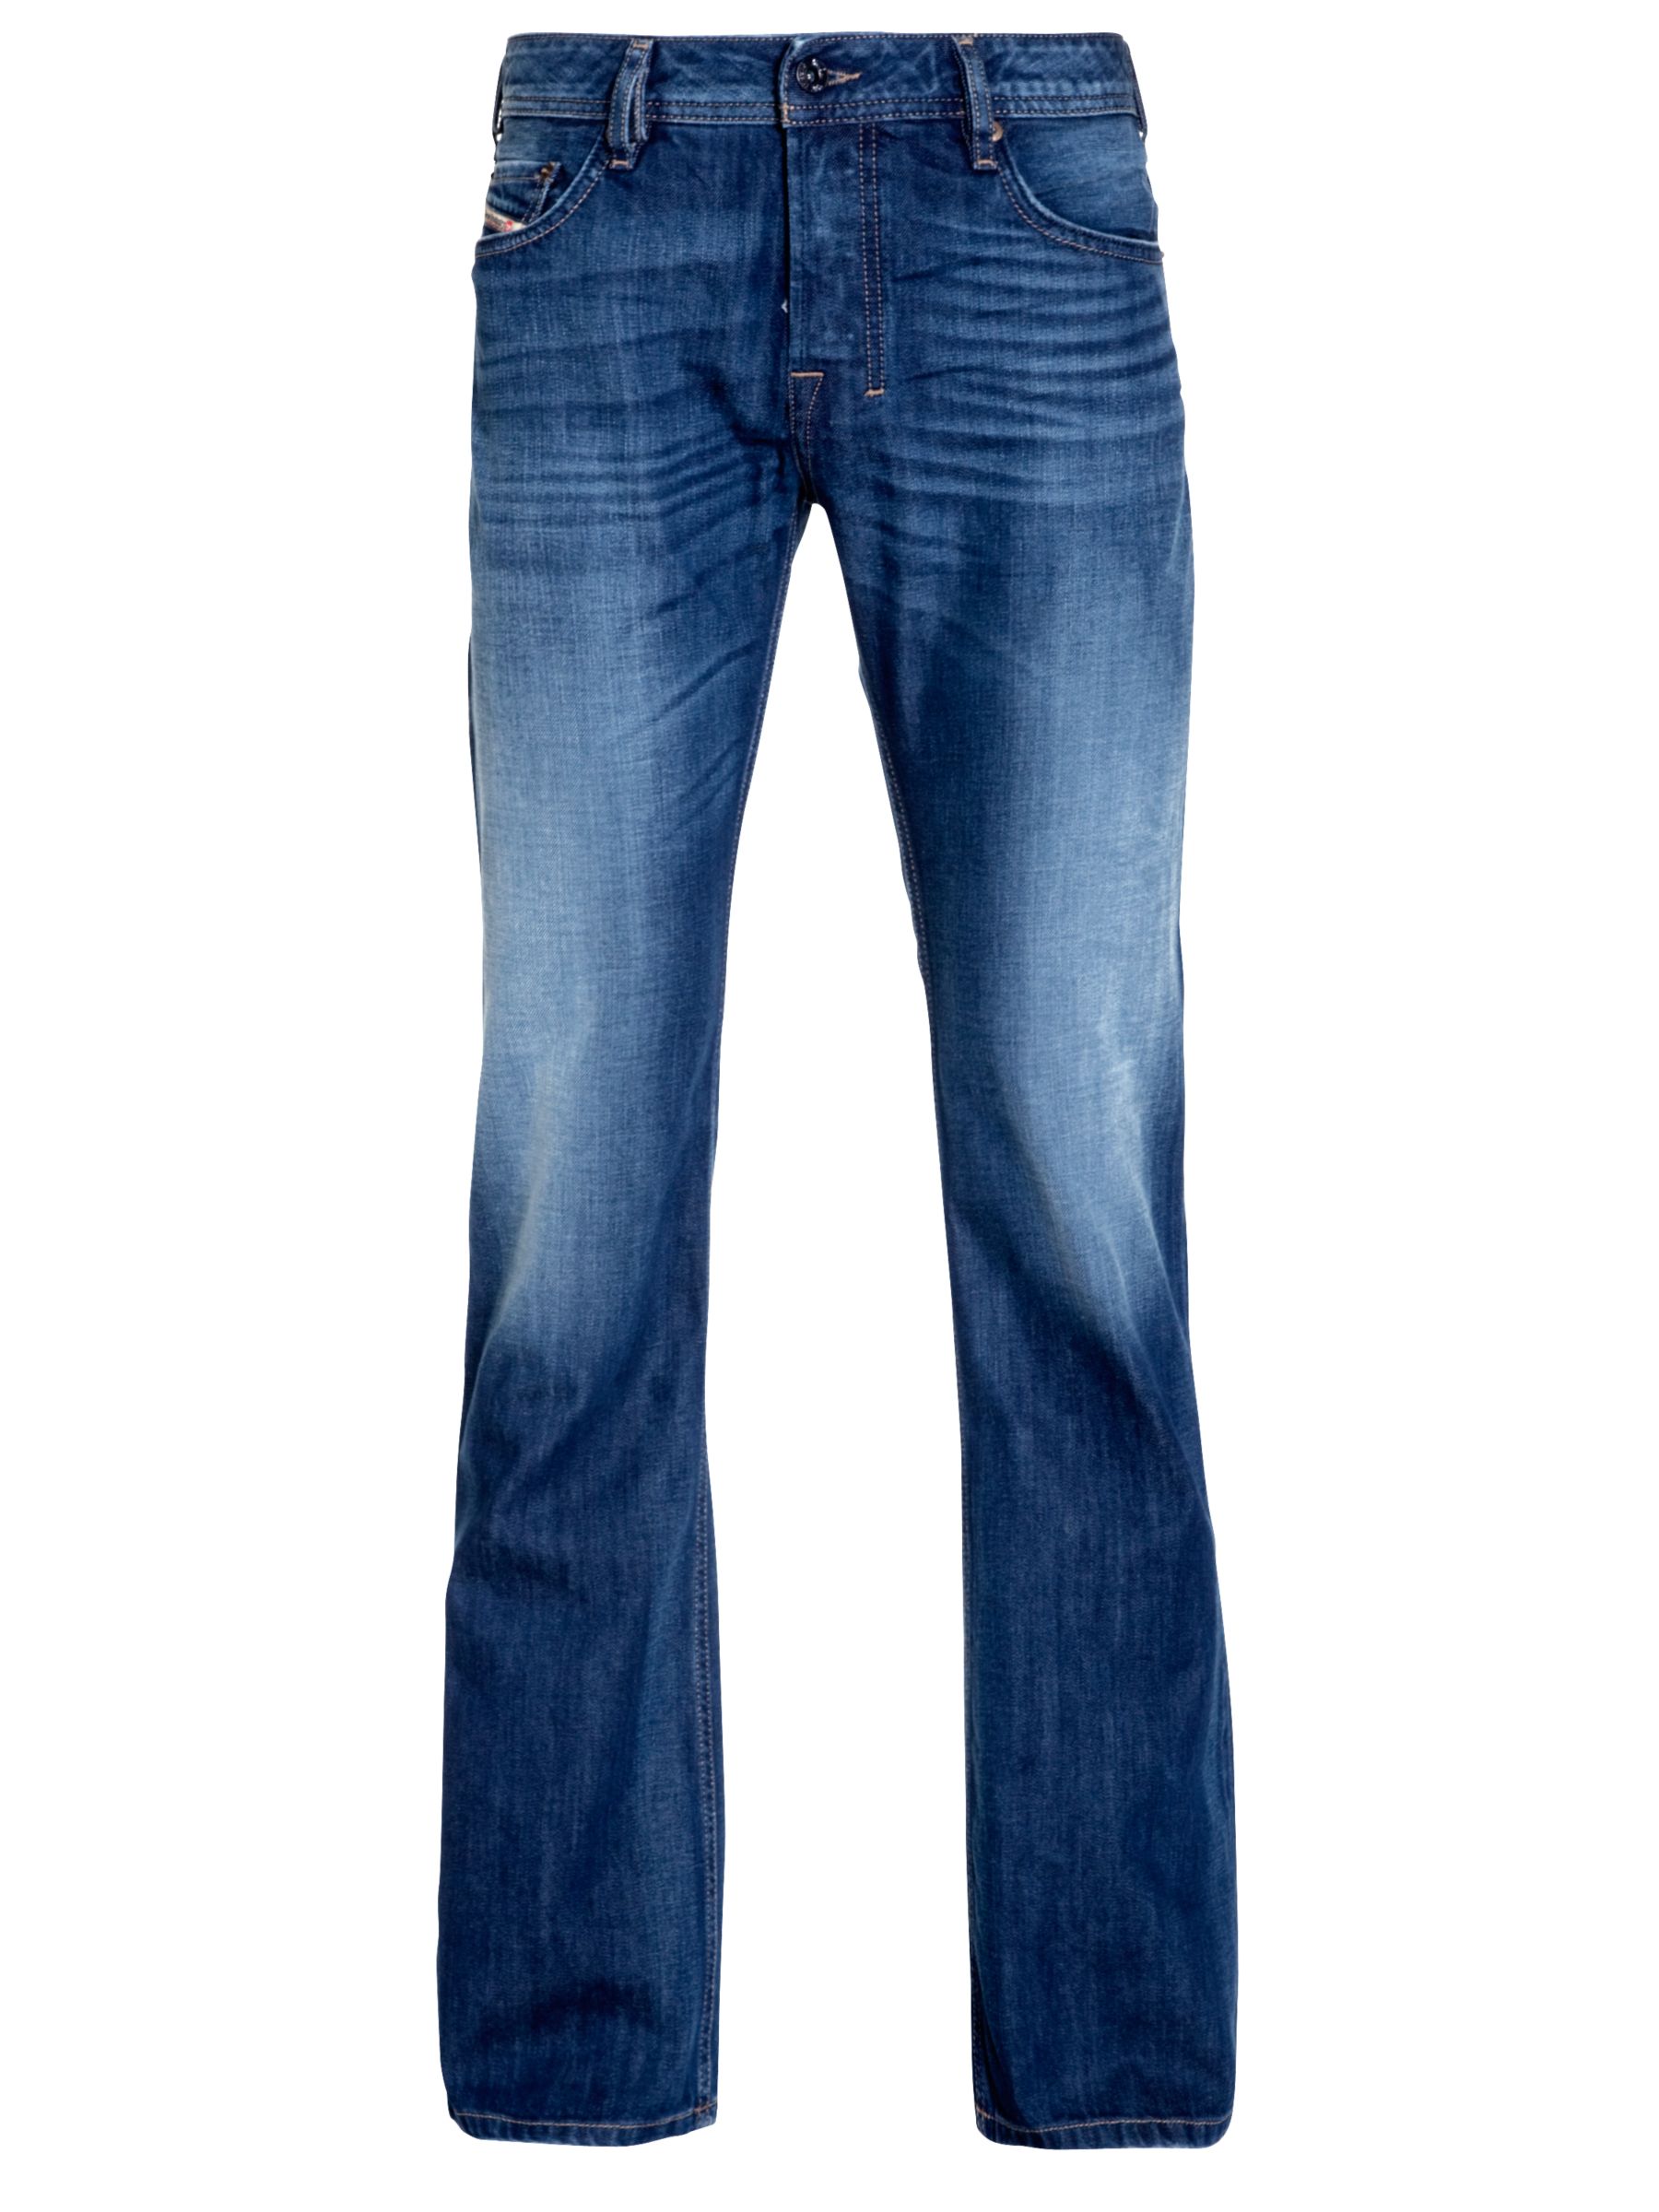 Diesel Zatiny Bootcut Jeans Blue 8xr